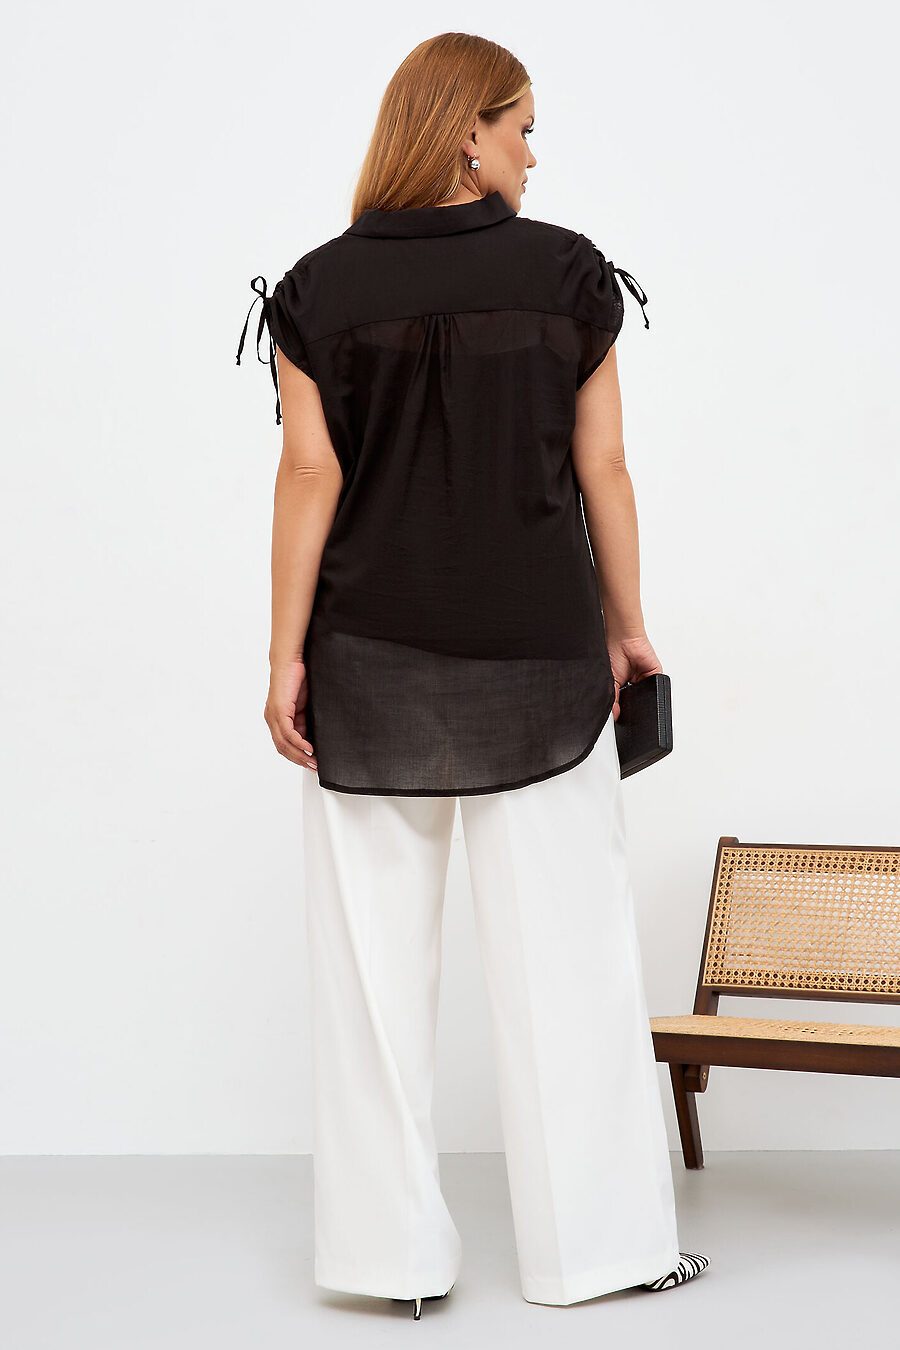 Комплект (туника, блузка) для женщин PANDA 796058 купить оптом от производителя. Совместная покупка женской одежды в OptMoyo